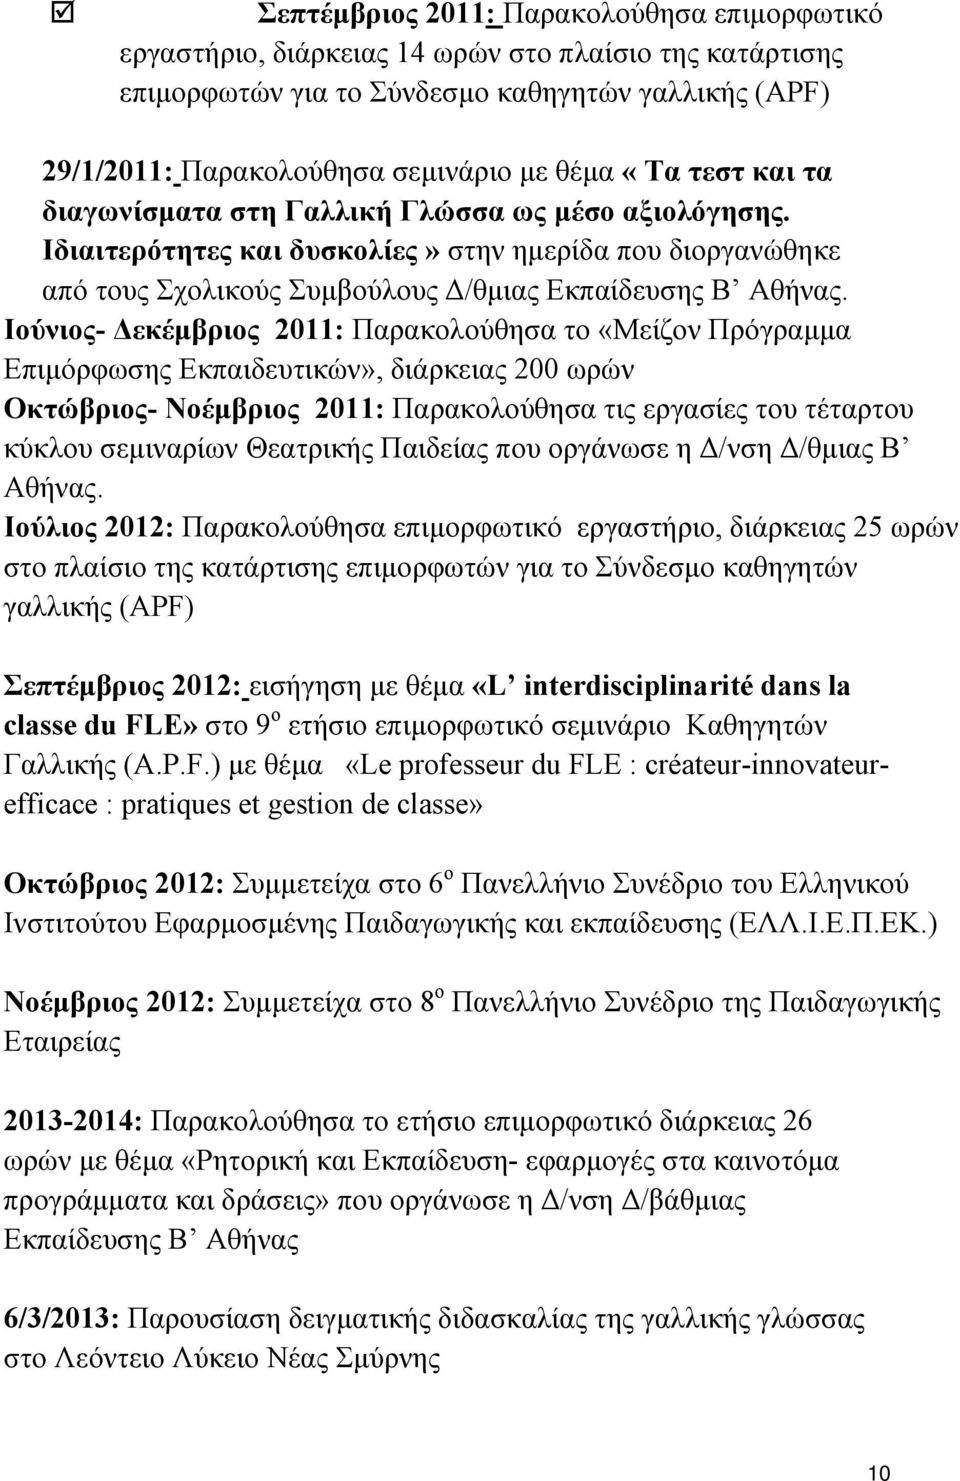 Ιούνιος- Δεκέμβριος 2011: Παρακολούθησα το «Μείζον Πρόγραμμα Επιμόρφωσης Εκπαιδευτικών», διάρκειας 200 ωρών Οκτώβριος- Νοέμβριος 2011: Παρακολούθησα τις εργασίες του τέταρτου κύκλου σεμιναρίων